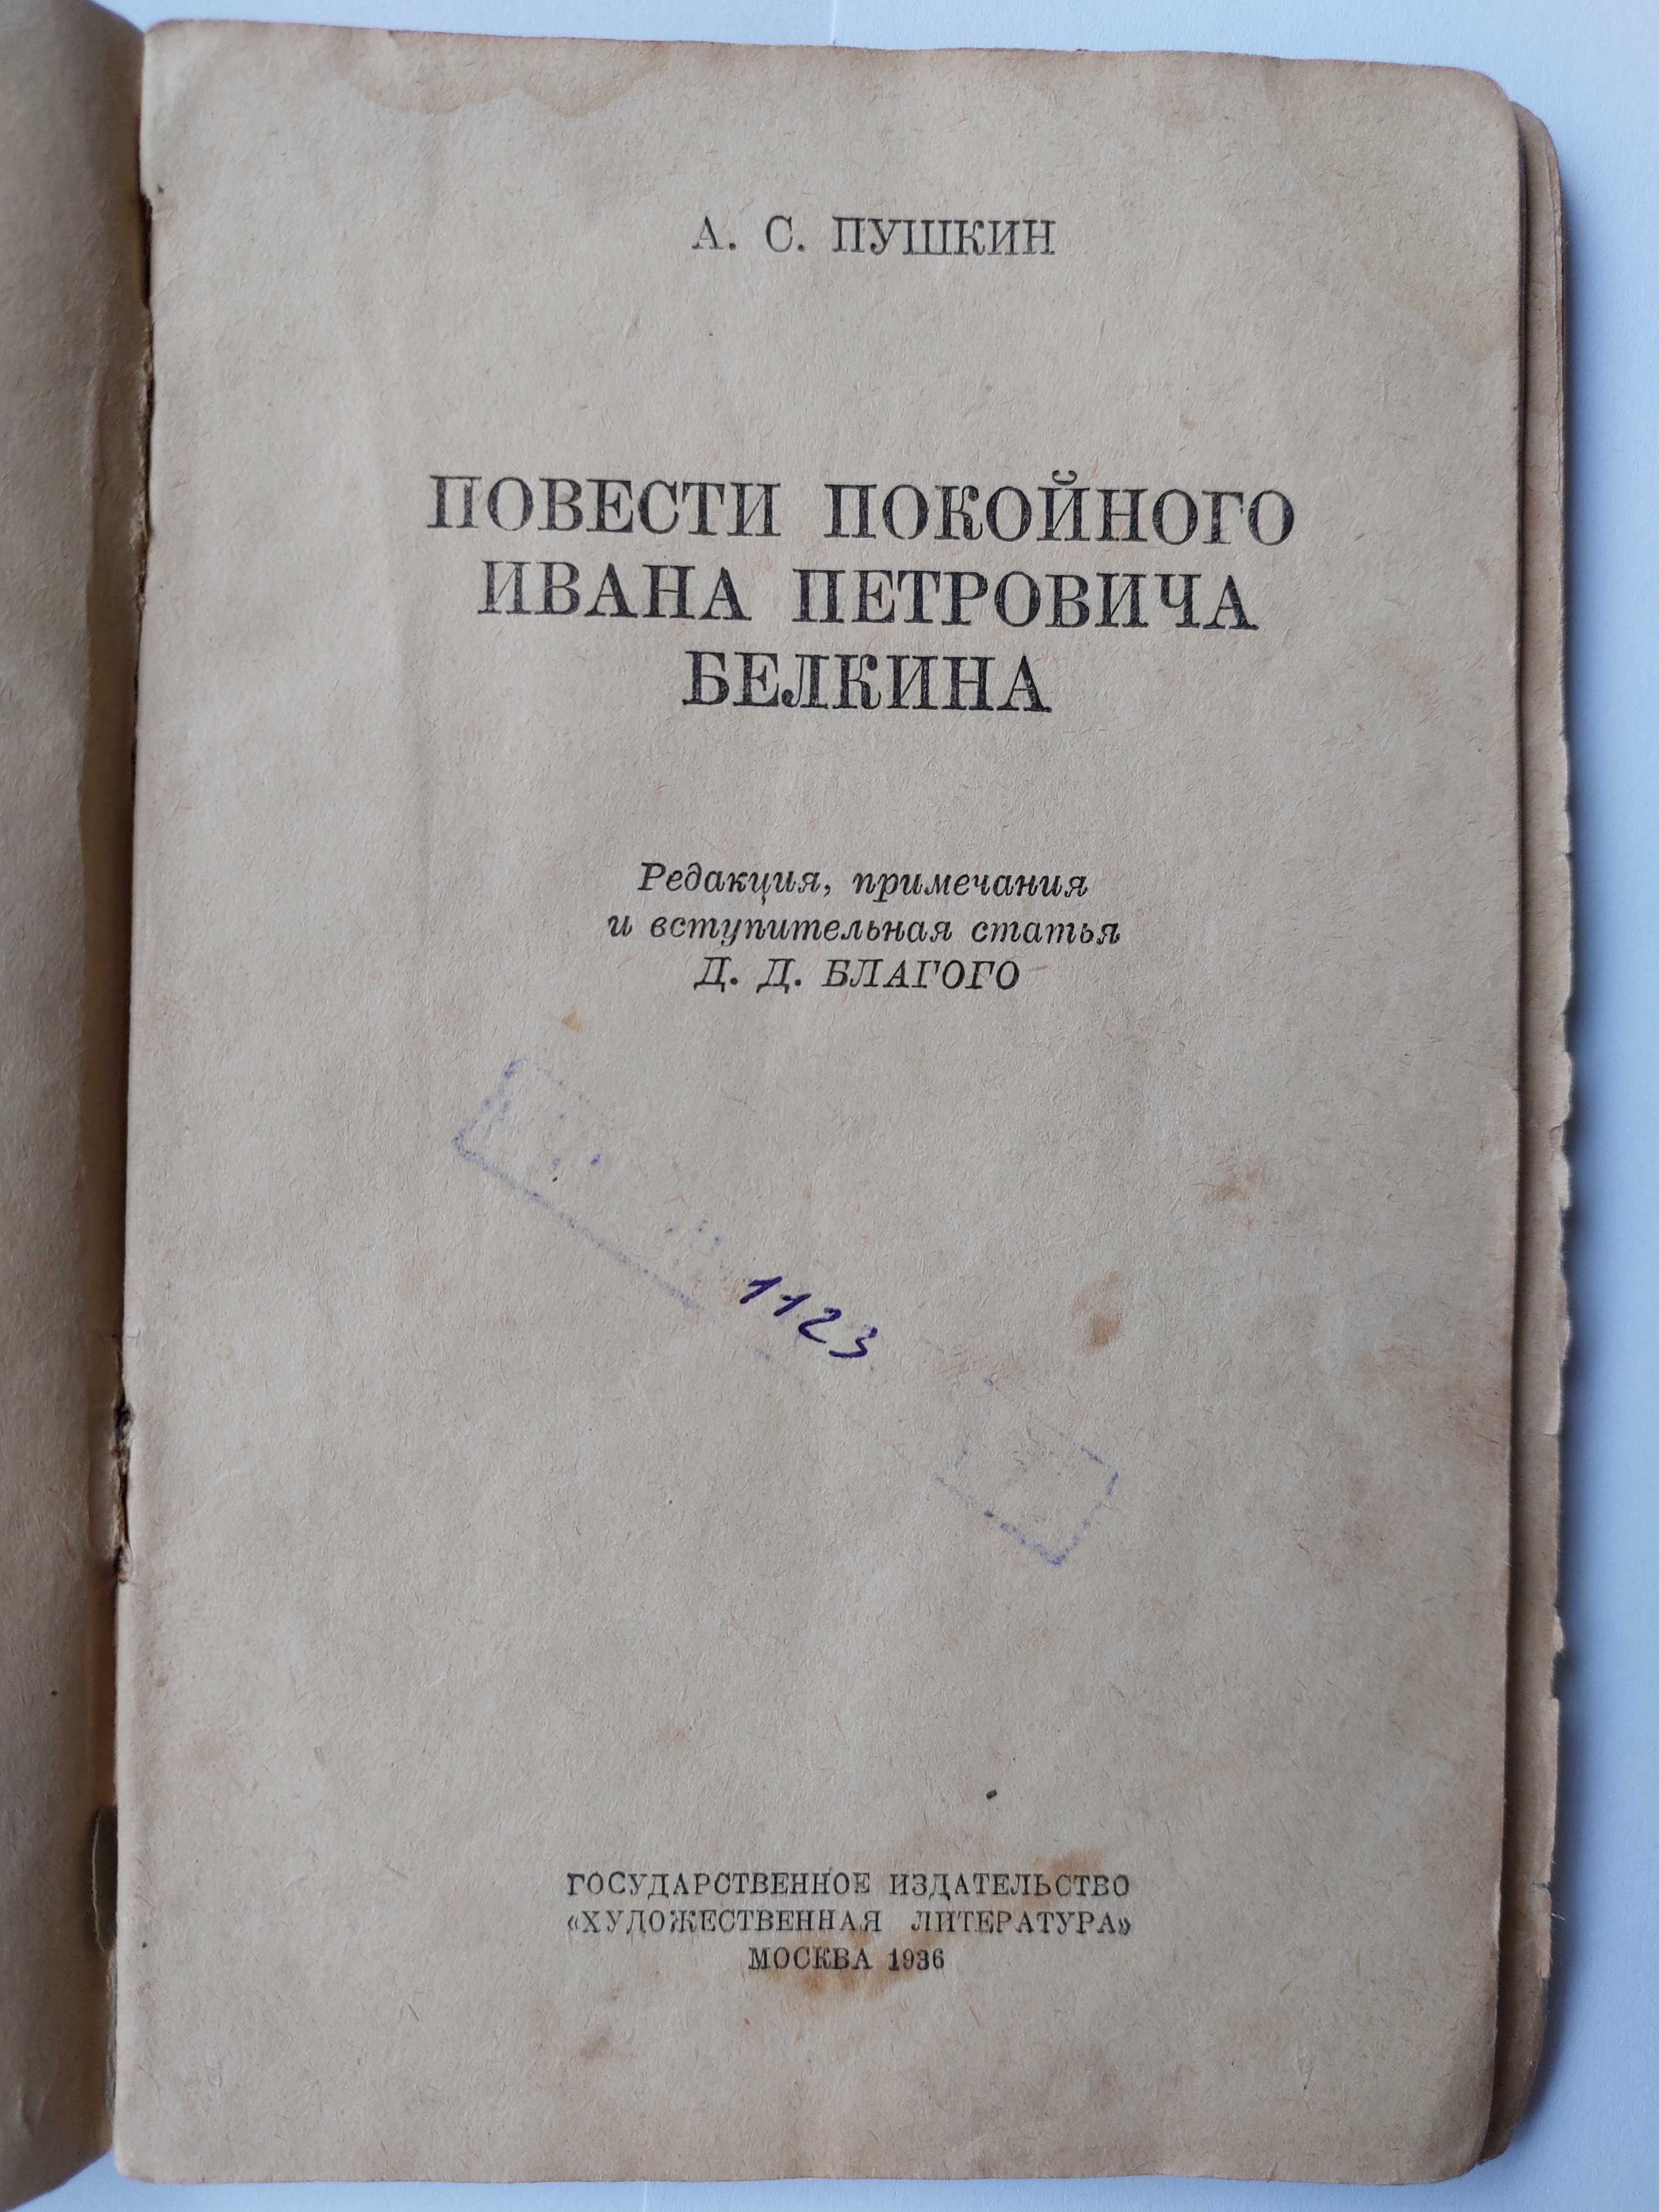 А.С. Пушкин, Повести покойного Ивана Петровича Белкина, 1936 г.